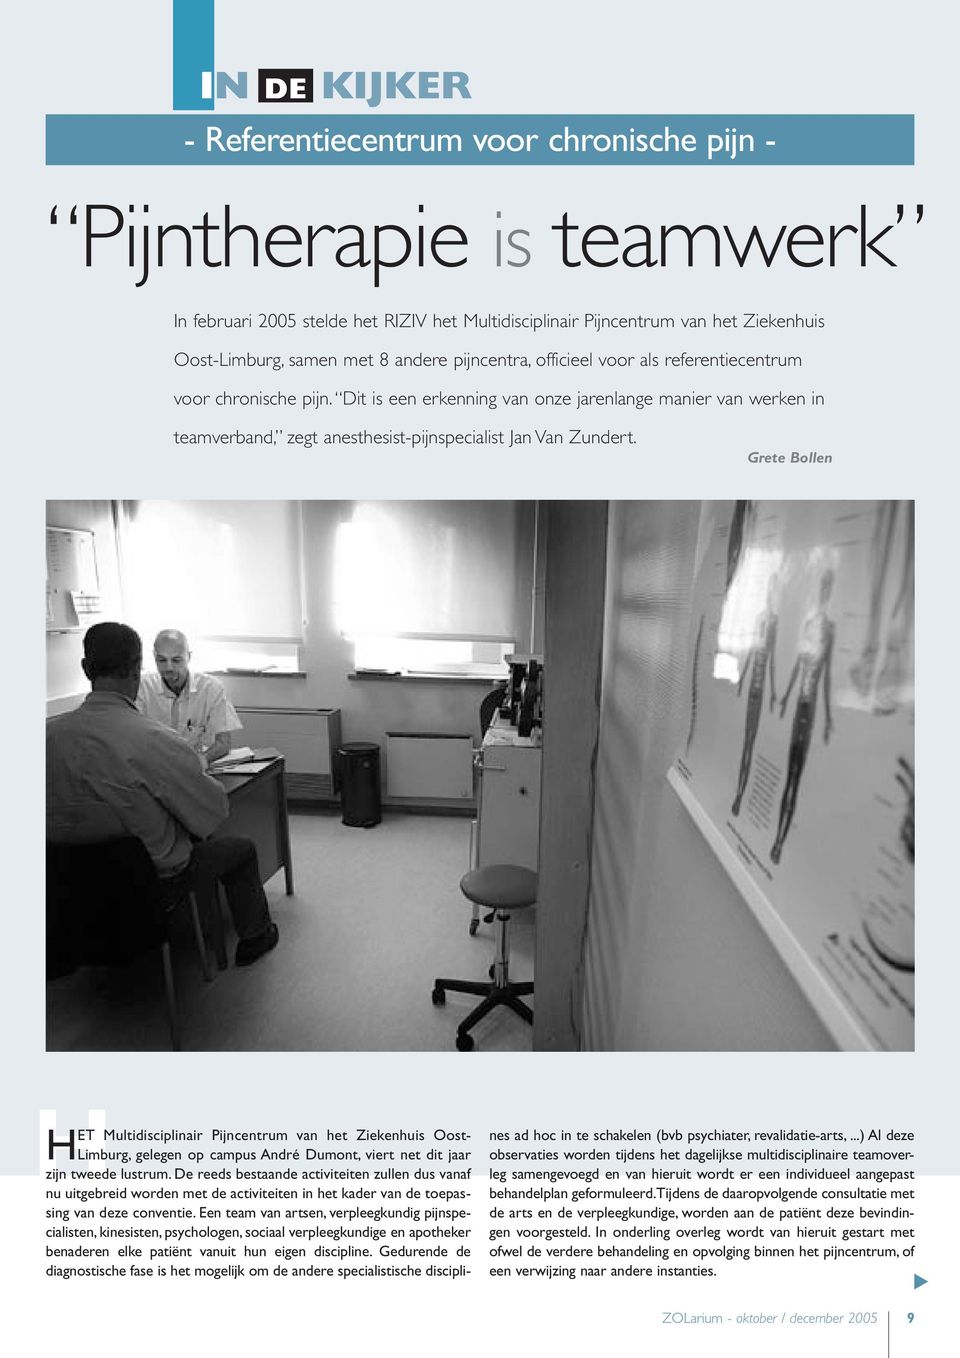 Dit is een erkenning van onze jarenlange manier van werken in teamverband, zegt anesthesist-pijnspecialist Jan Van Zundert.